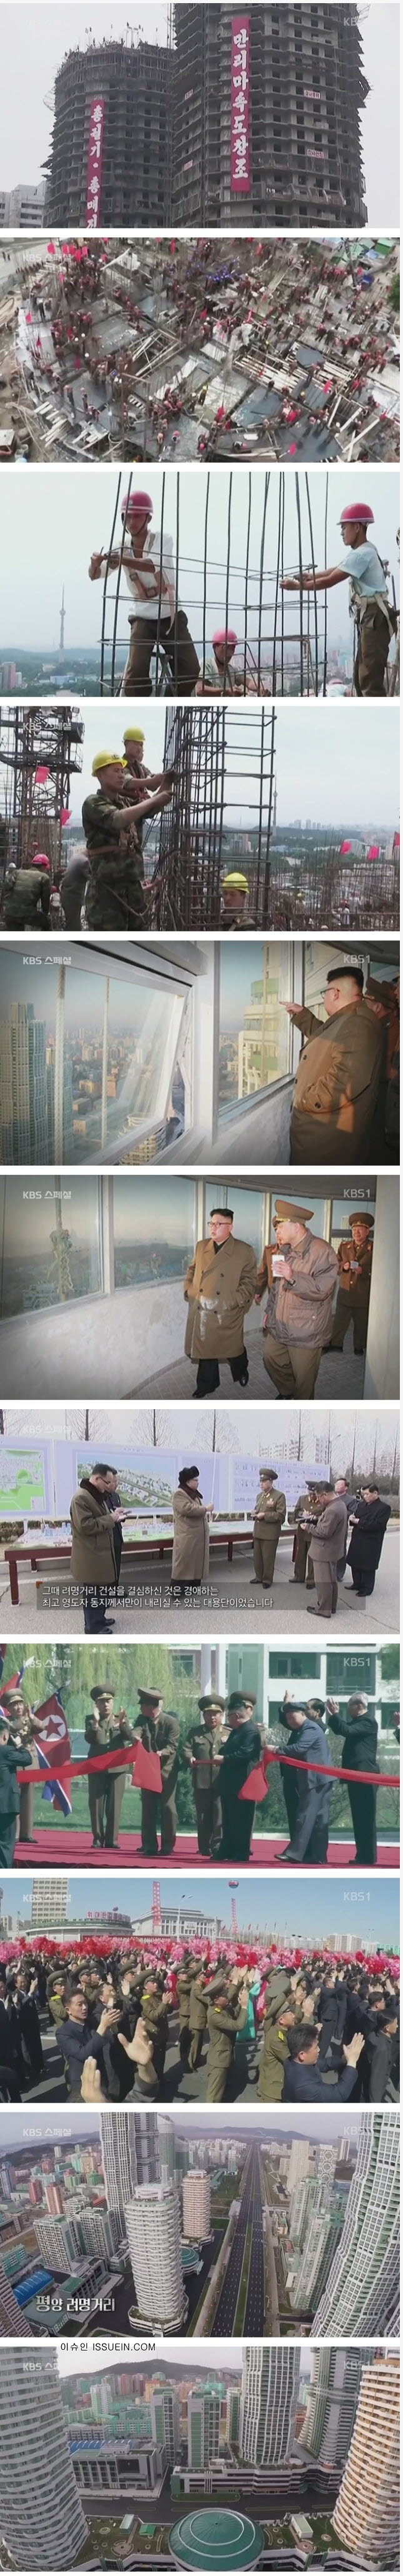 발전 중인 북한